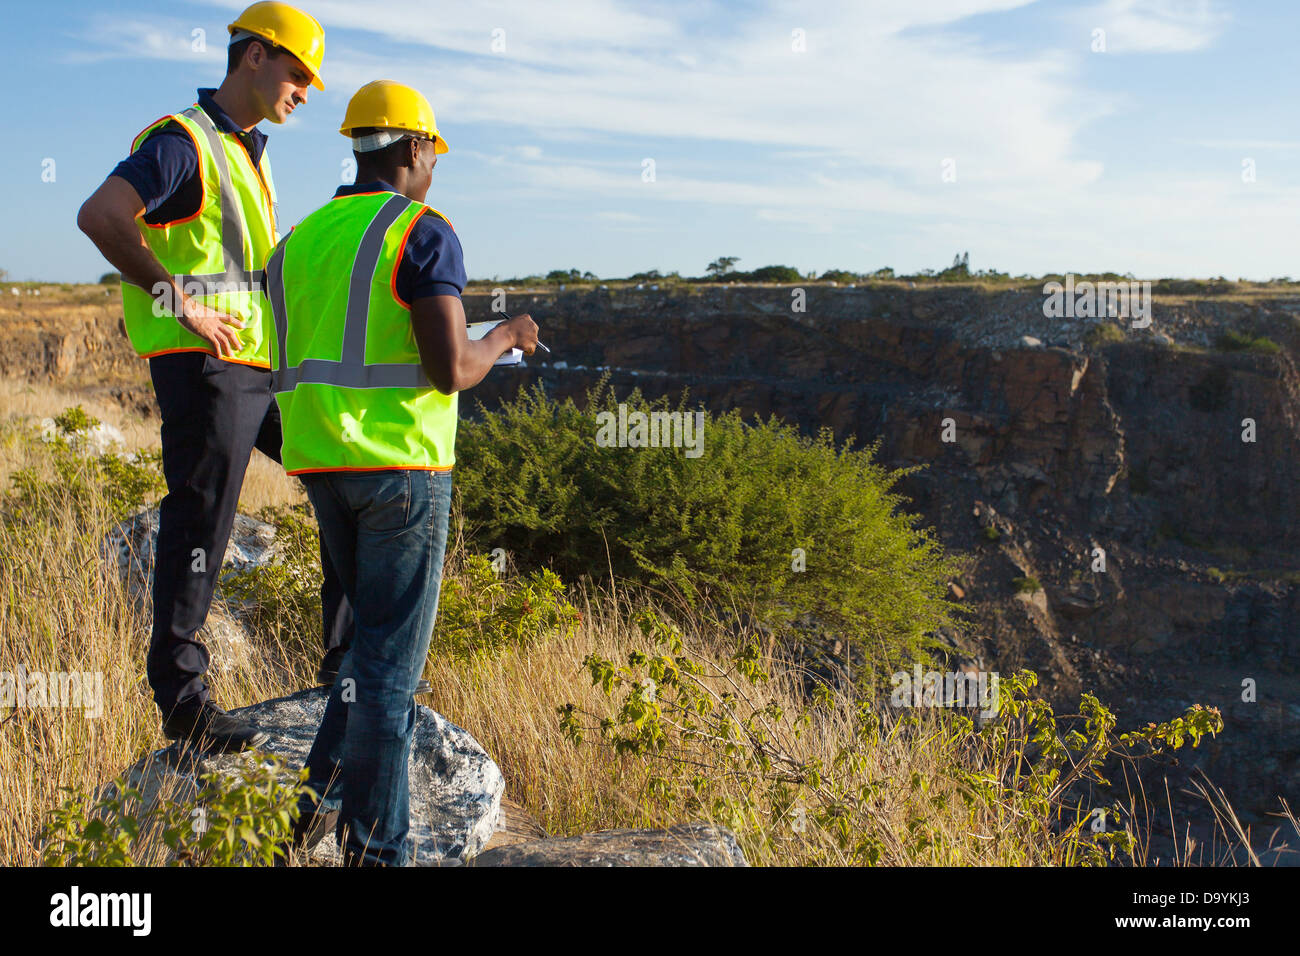 Dos varones de inspectores que trabajan en el sitio minero Foto de stock